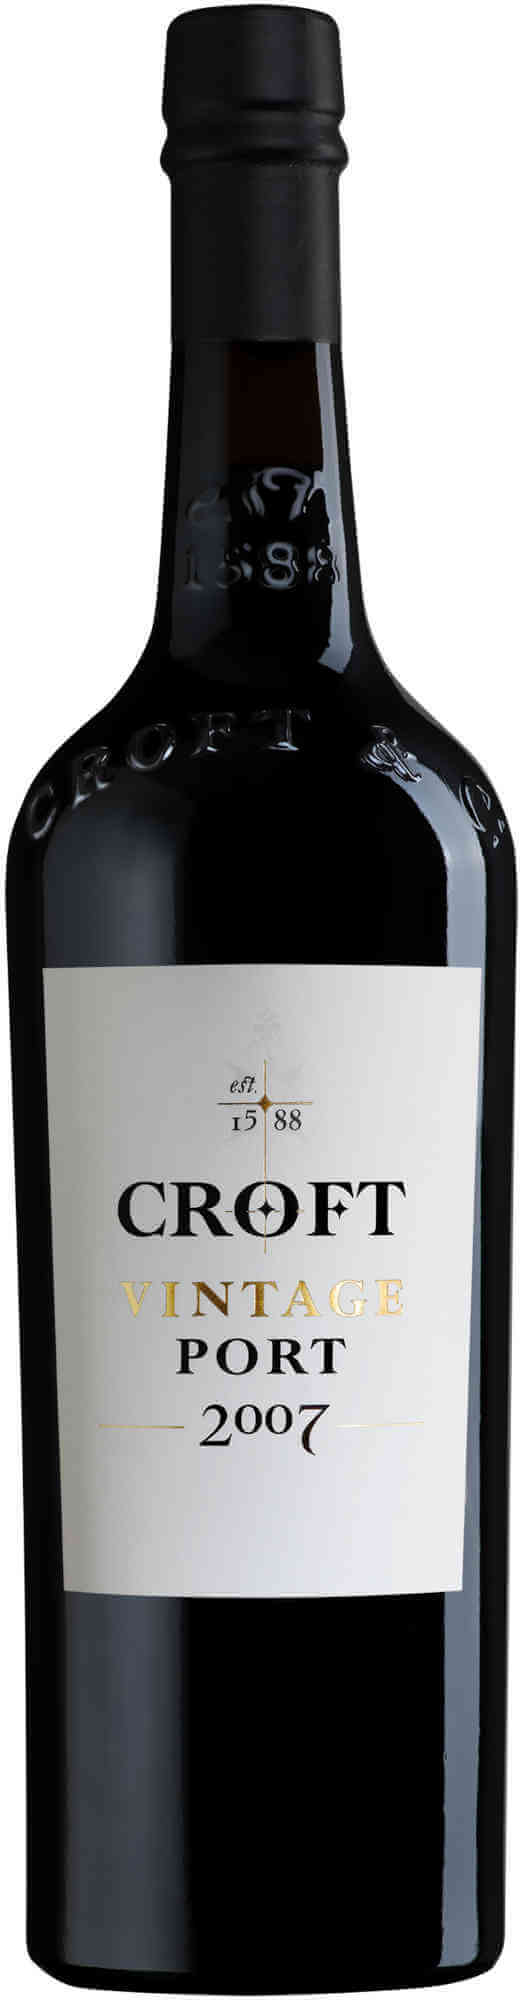 Croft-Vintage-Port-2007